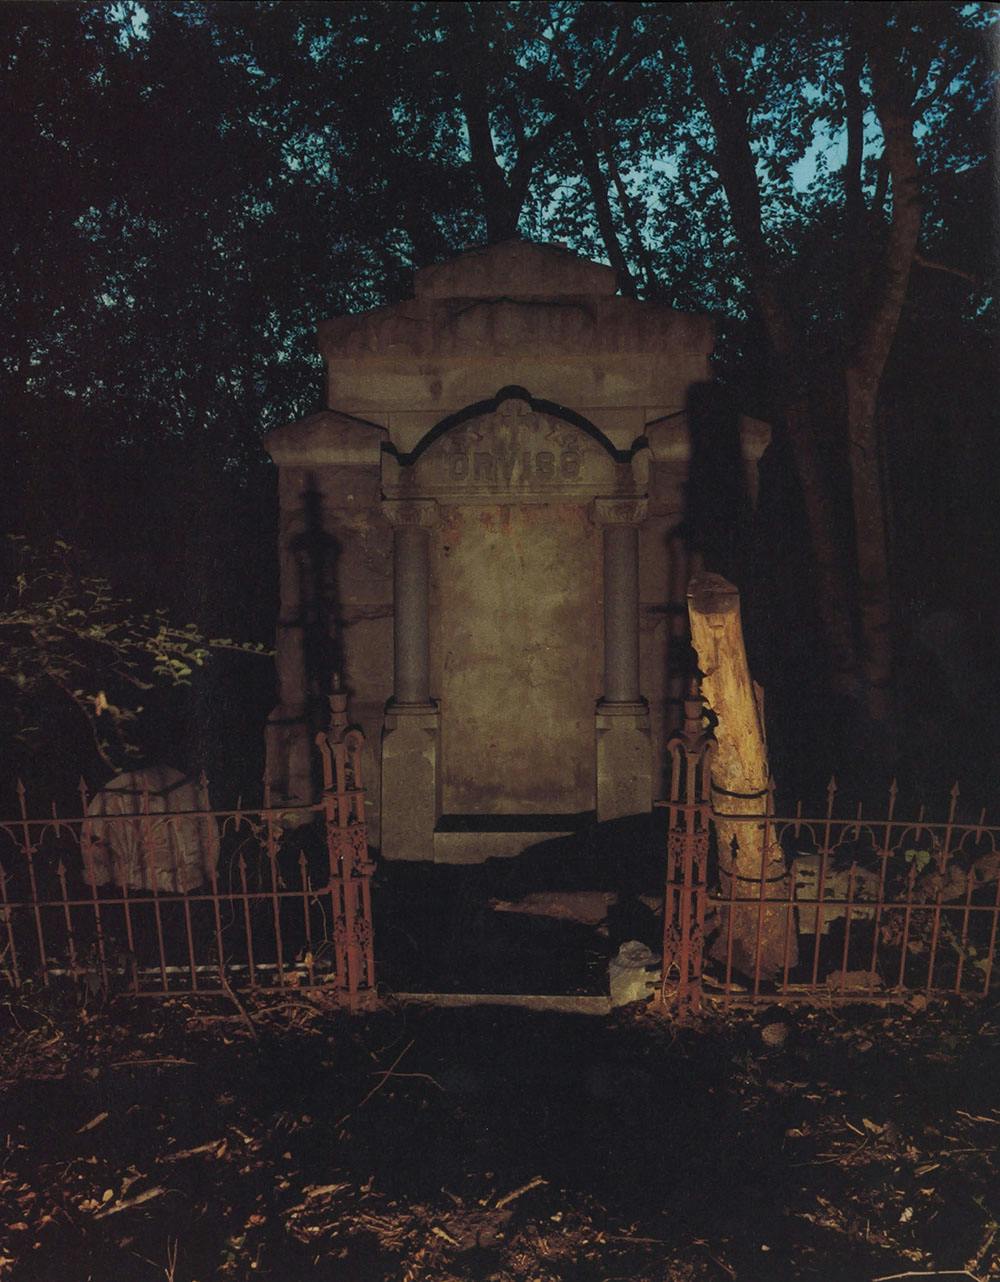 Orviss Vault gravesite at night. 